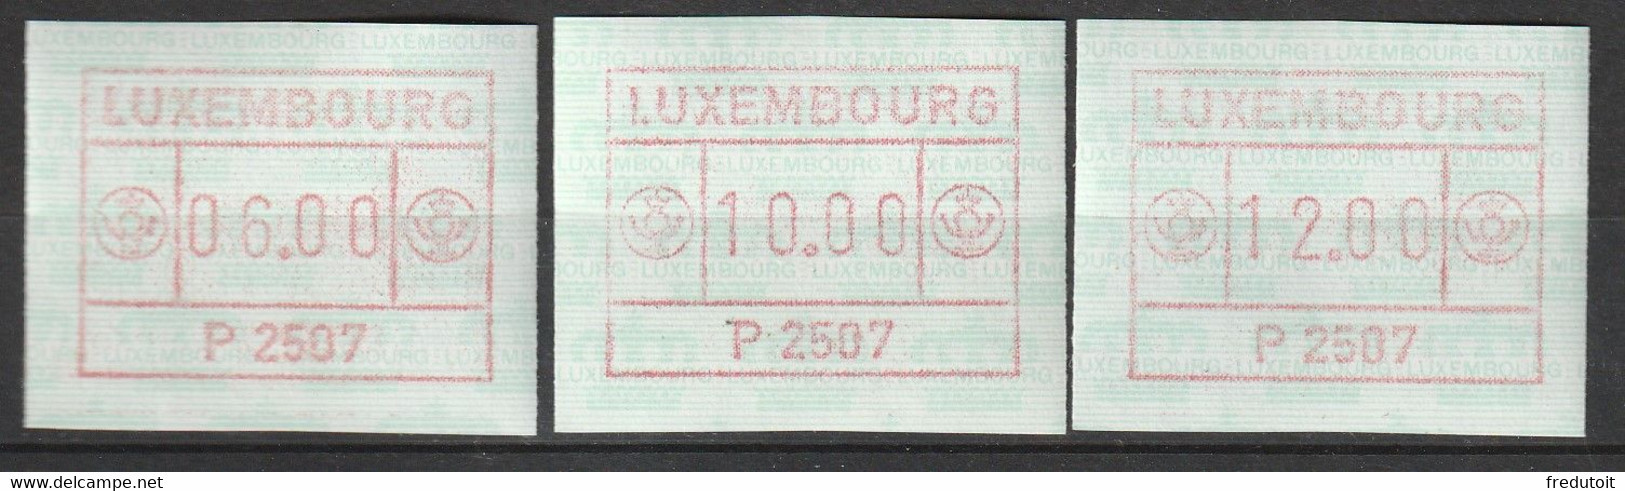 LUXEMBOURG - Timbres De Distributeurs - N°1 (1983) P2507 - Vignettes D'affranchissement